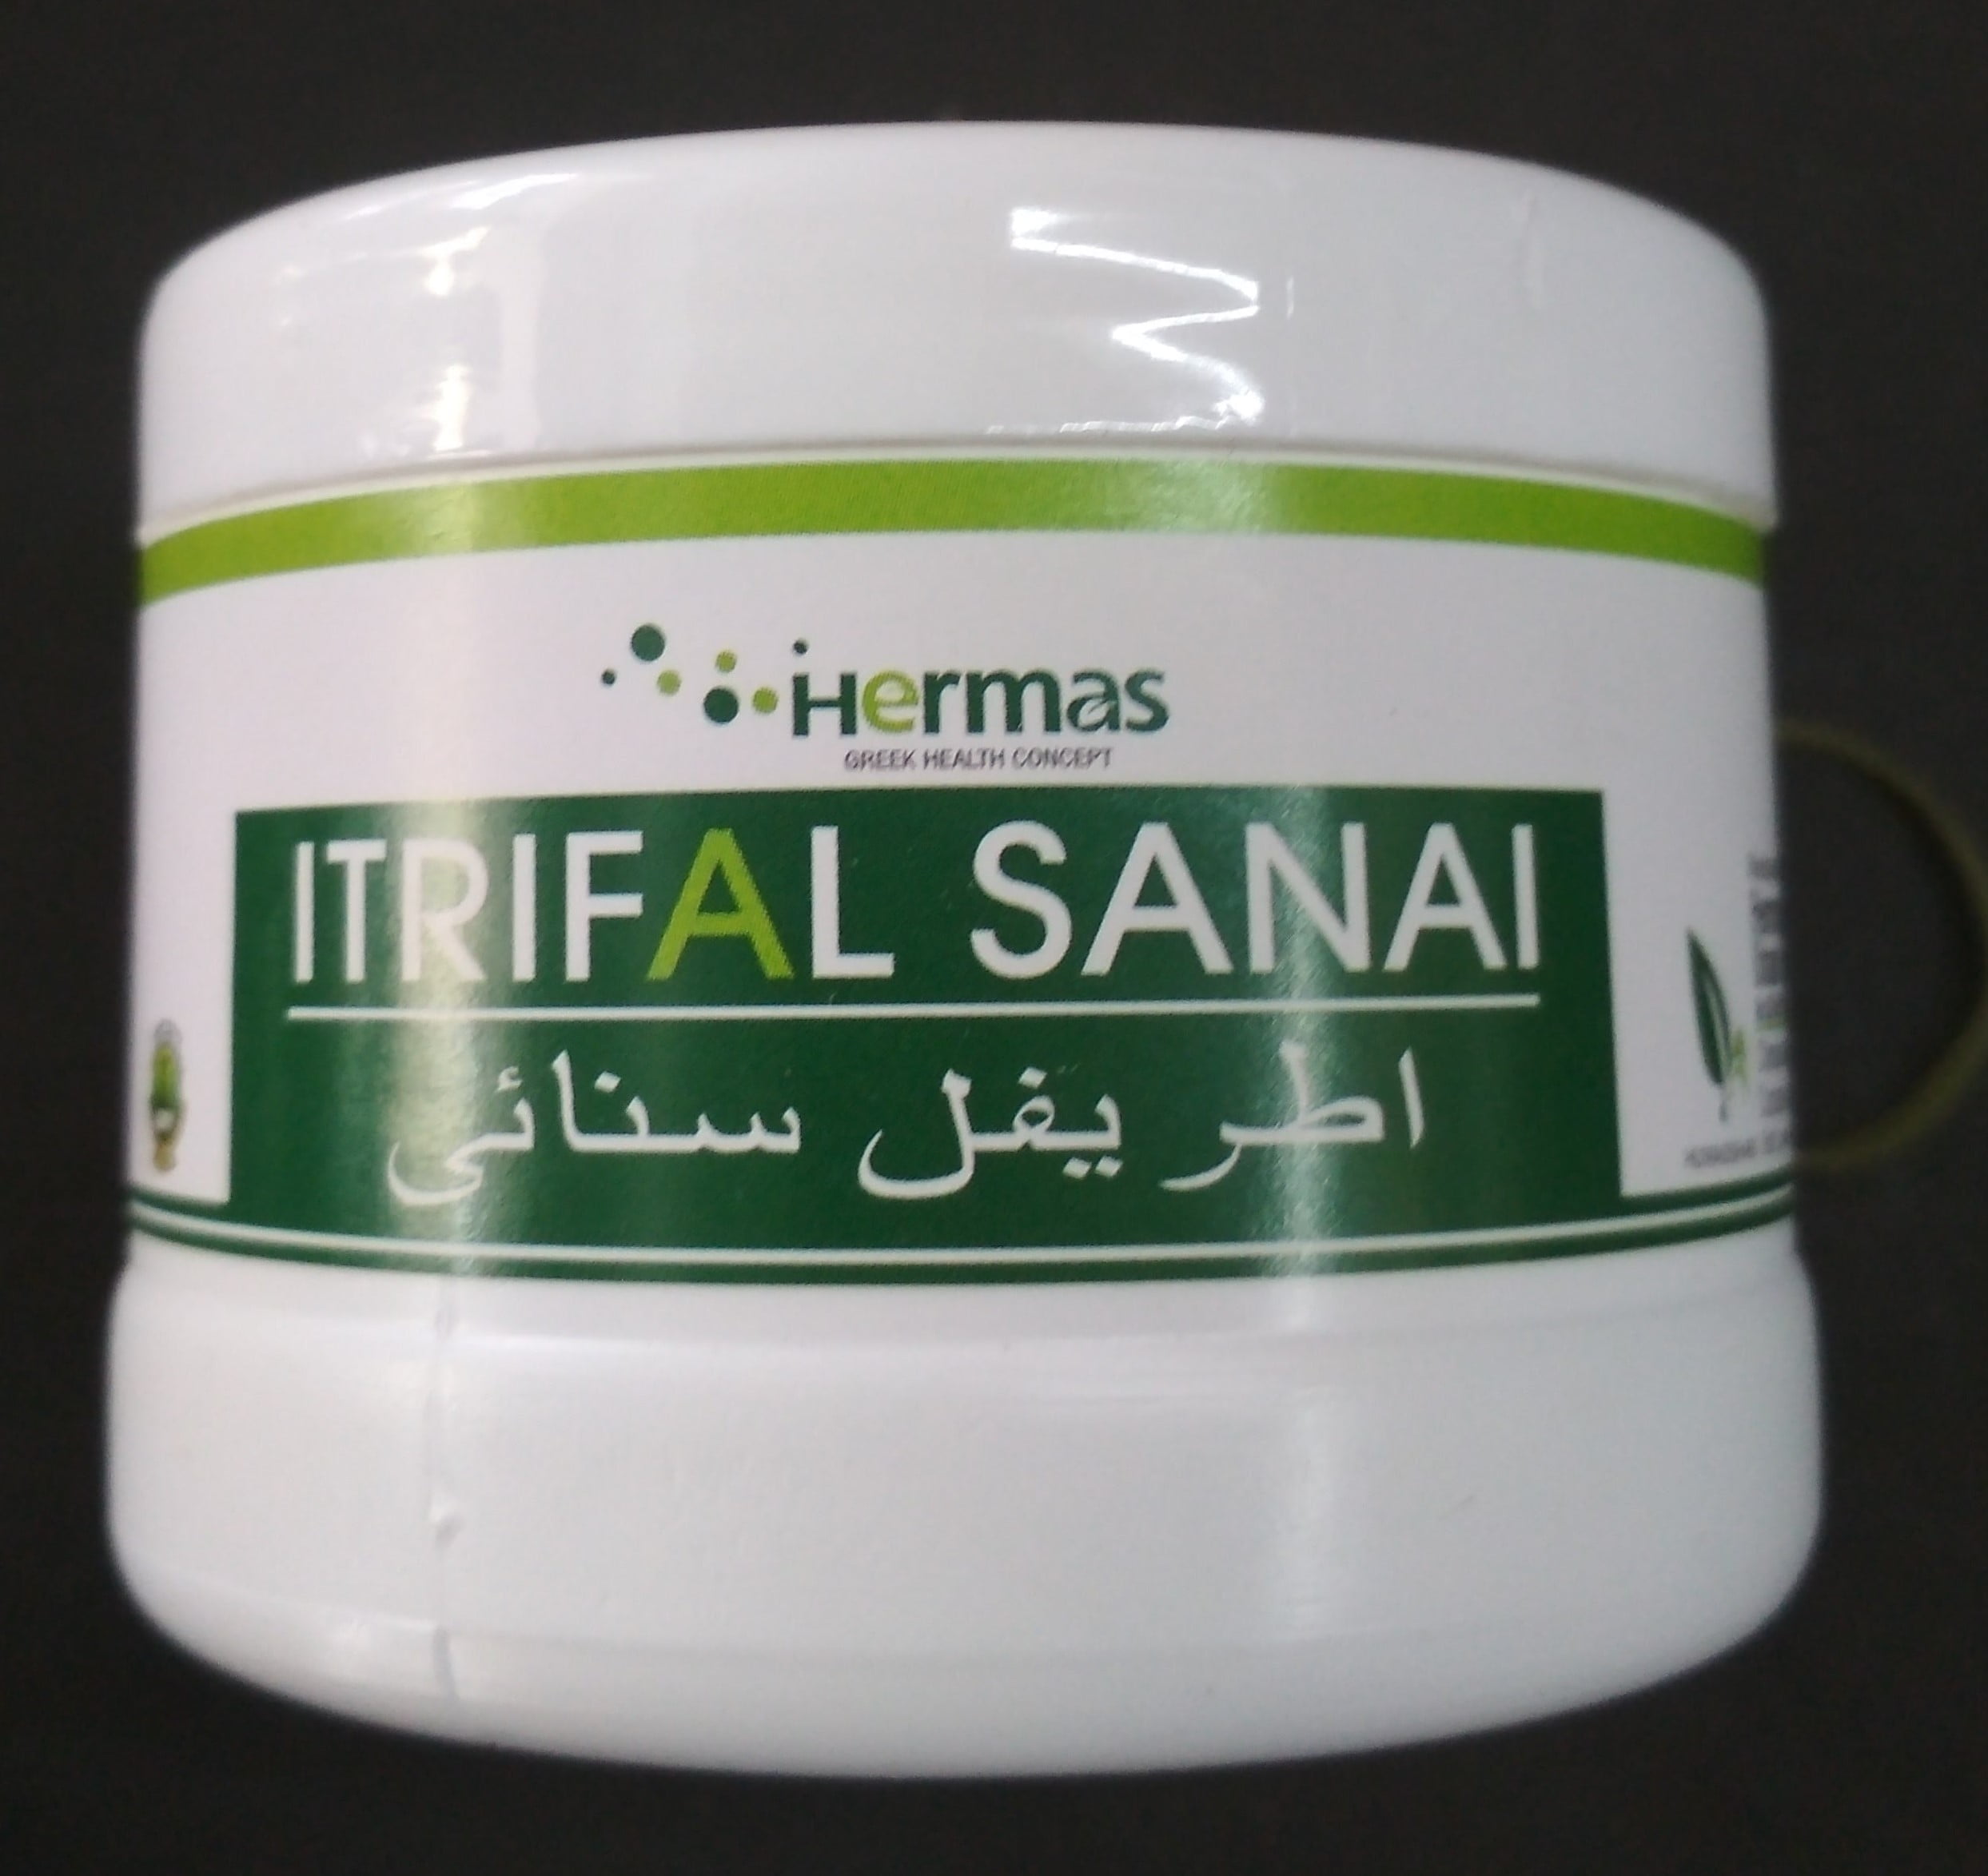 itrifal sanai 250 gm hermas unani herbal pharmaceutical